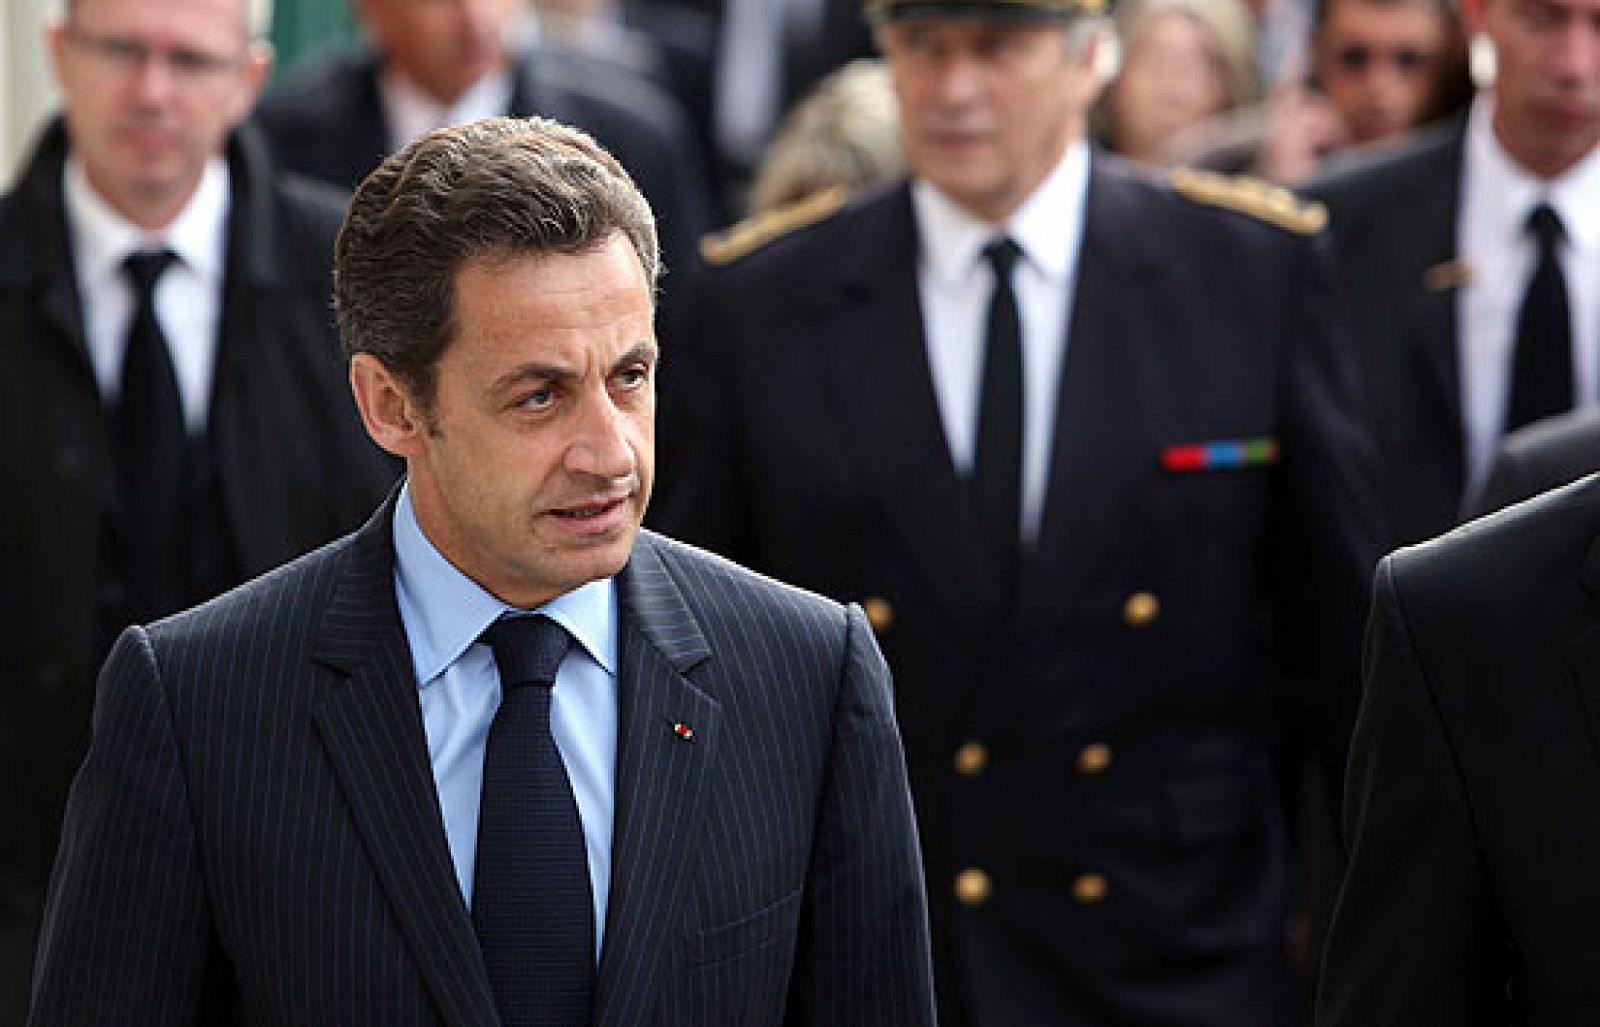 El eurodiputado del Partido Popular Luis Herrero asegura que la próxima vez que vea a Sarkozy le "mirará con cierto desprecio" y le dirá: "y tú, enano, ¿de qué vas?".